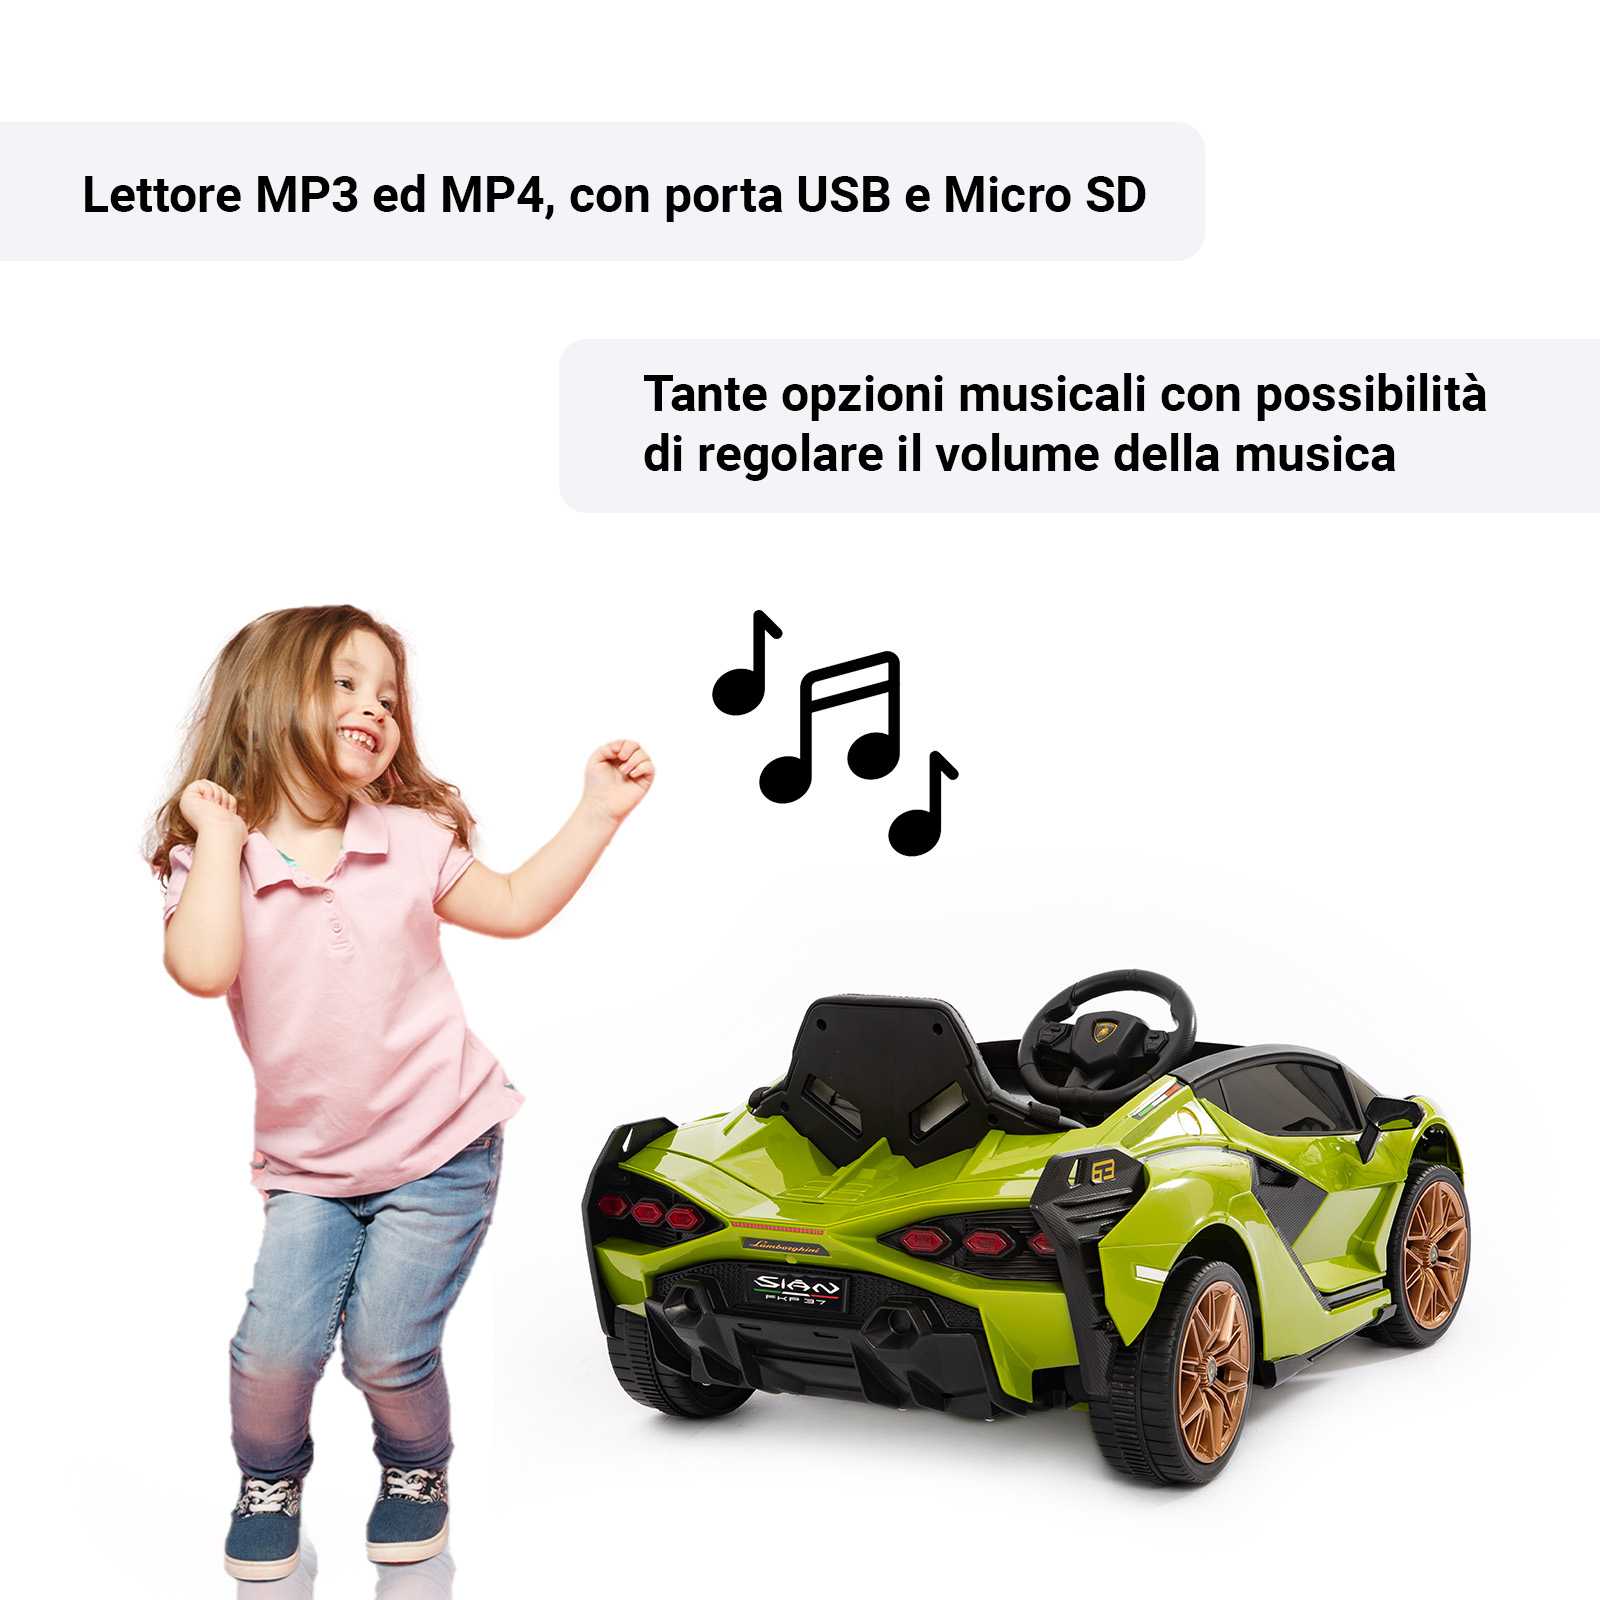 Lettore MP3 con porta USB e Micro SD